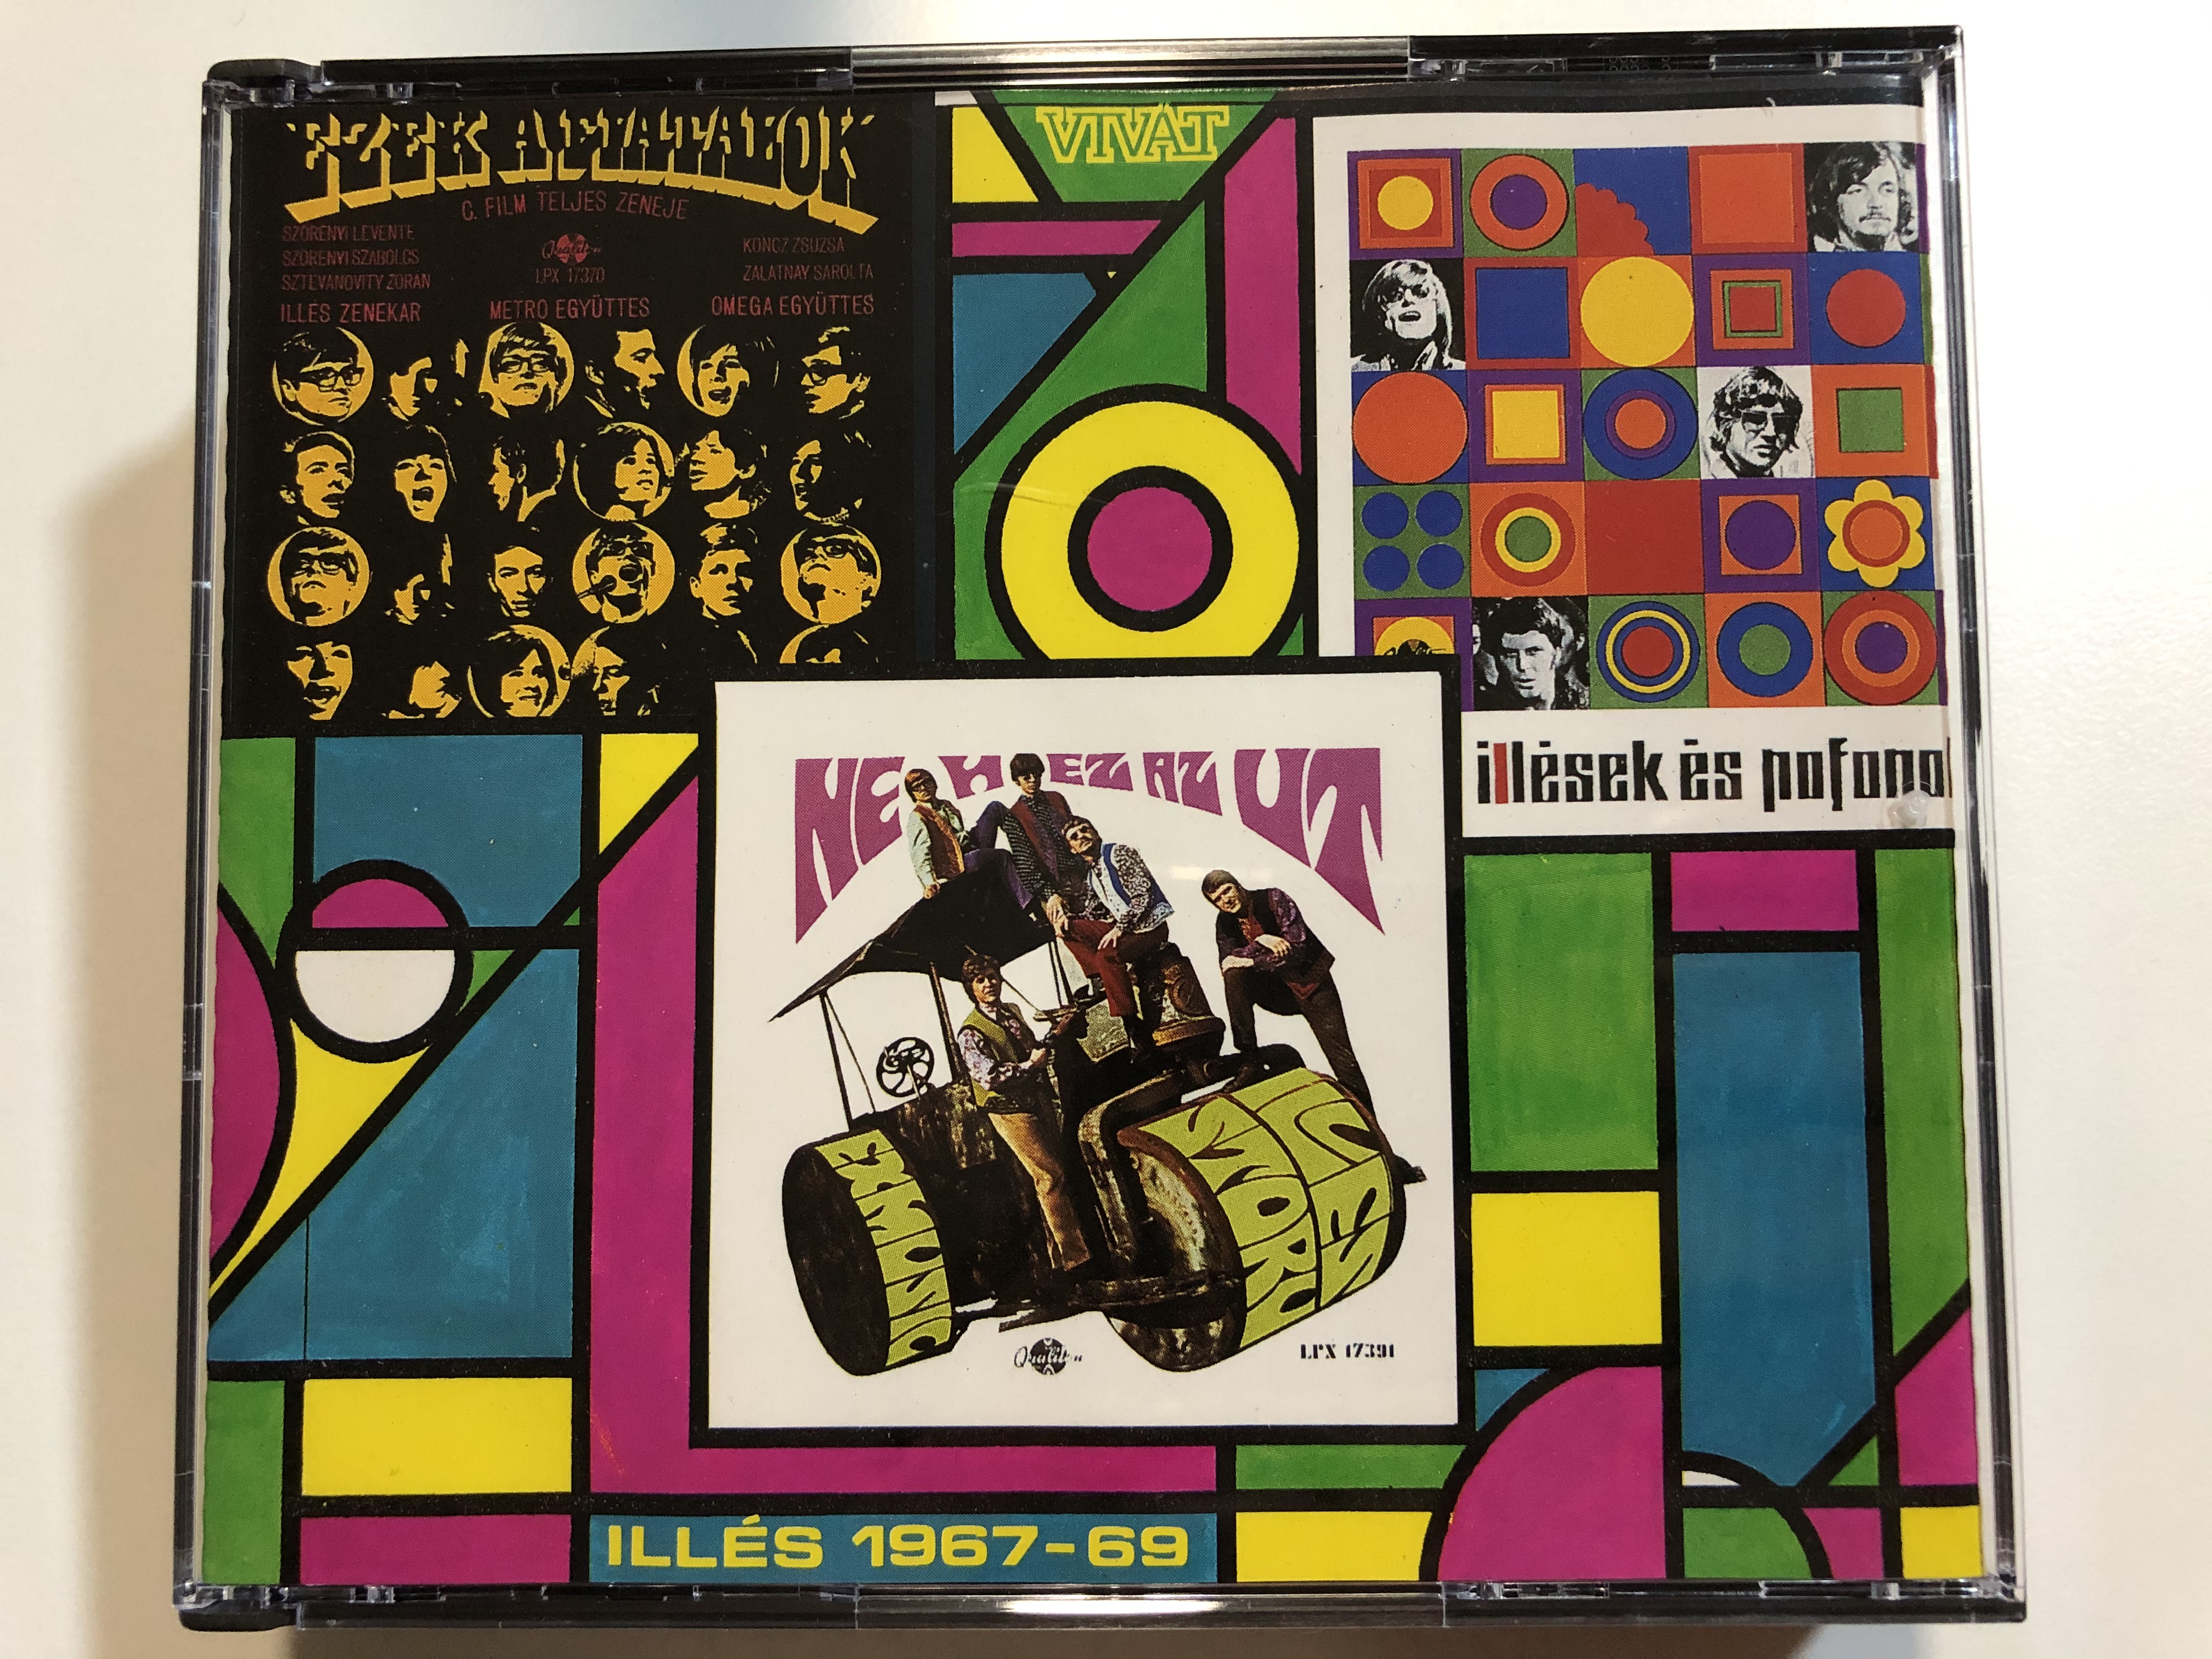 ill-s-1967-69-ezek-a-fiatalok-neh-z-az-t-ill-sek-s-pofonok-viv-t-2x-audio-cd-1990-hcd-37445-46-1-.jpg